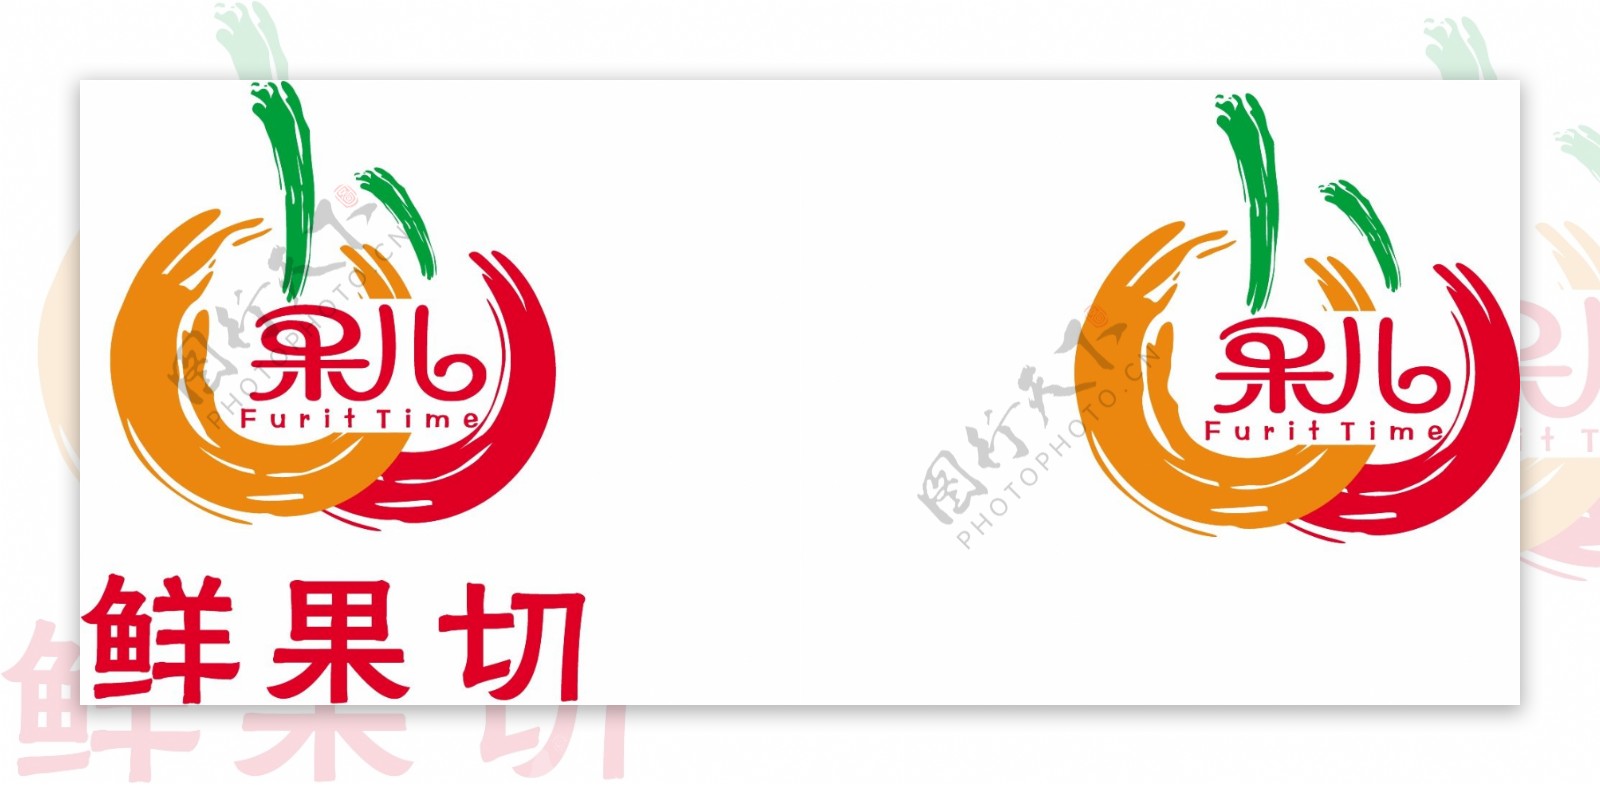 水果店形象logo